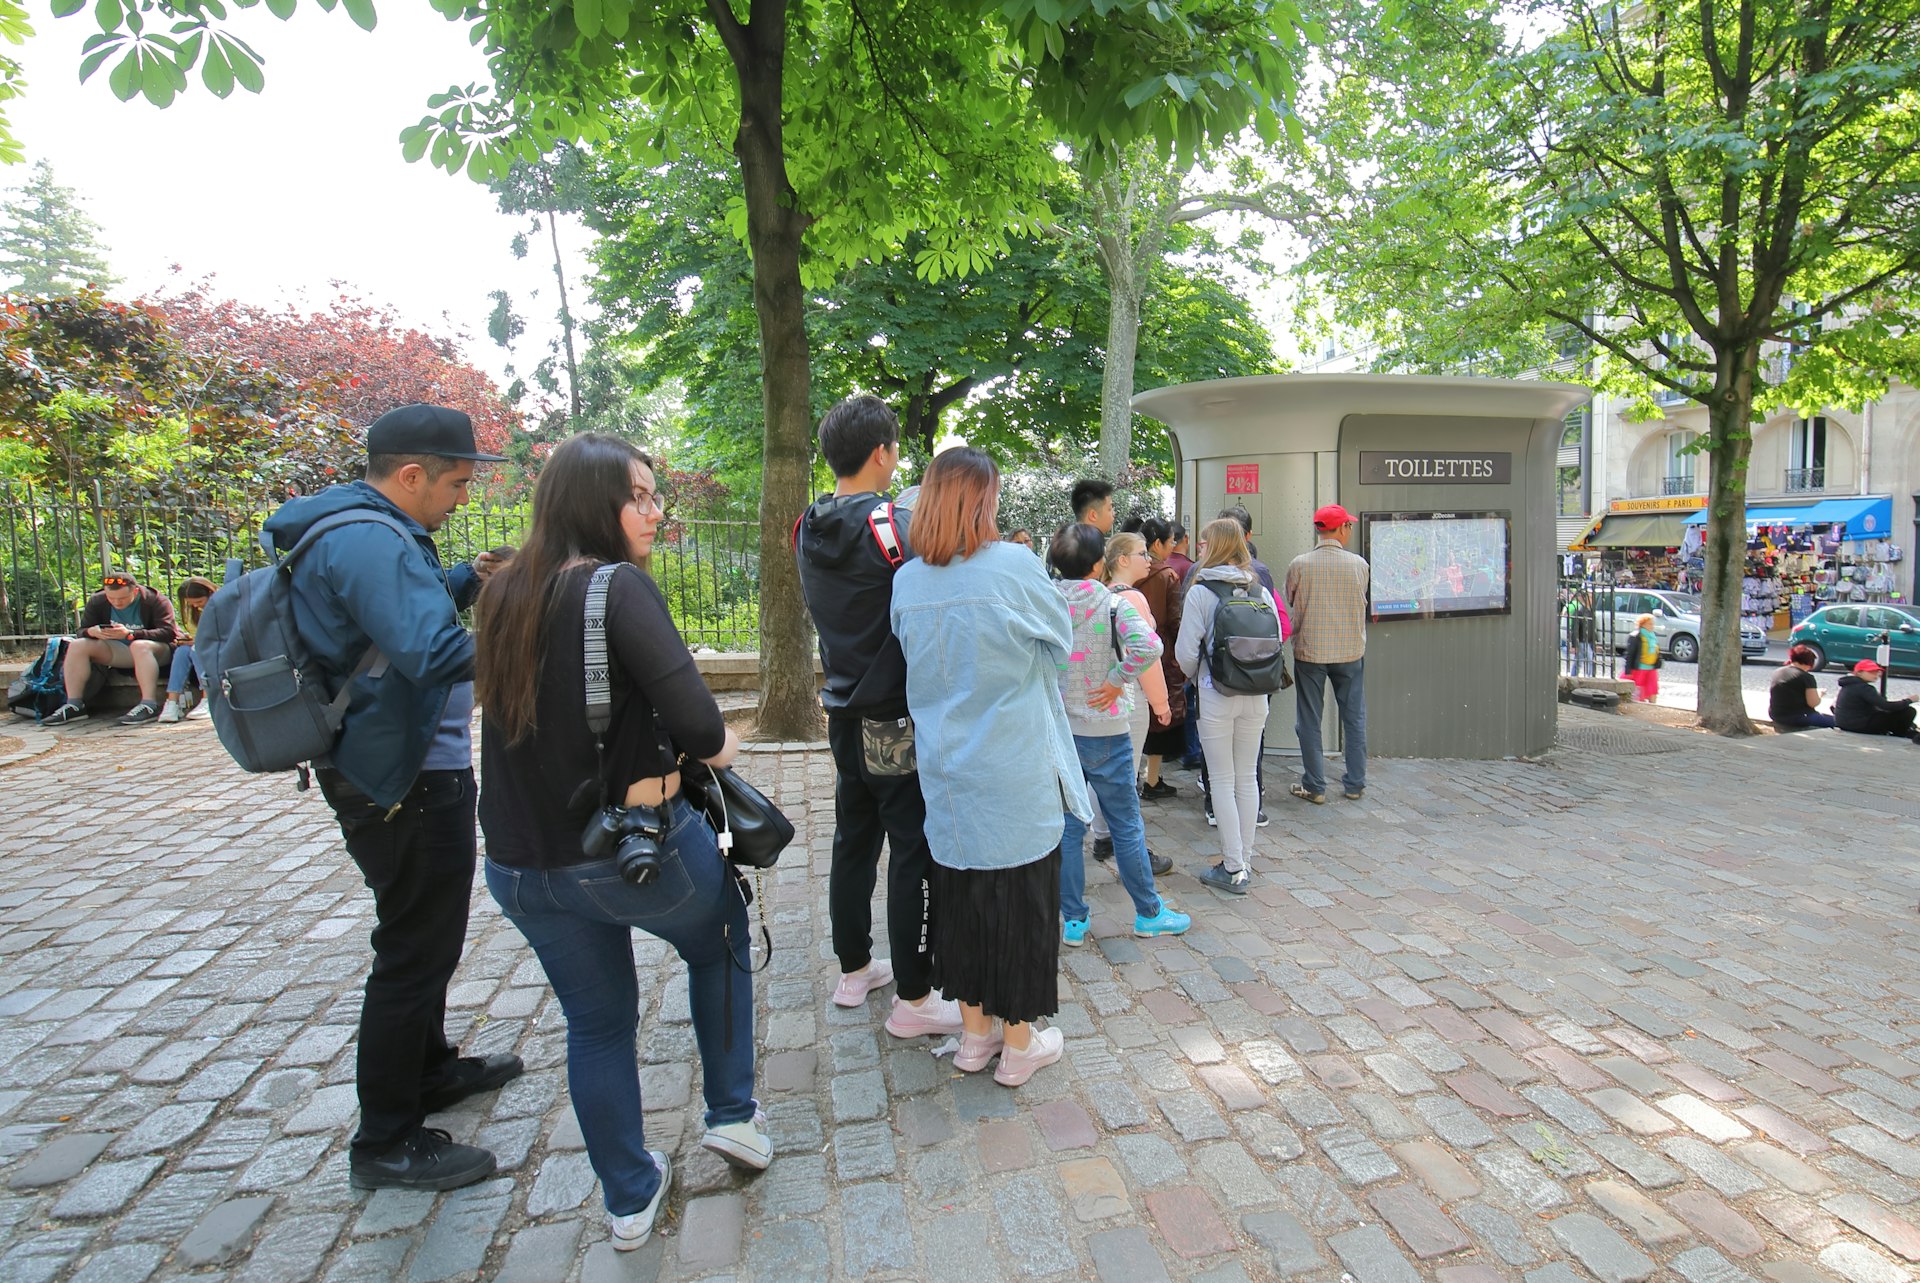 Unidentified people queue for public “Sanisette” toilet on a street in Paris, Île-de-France, France